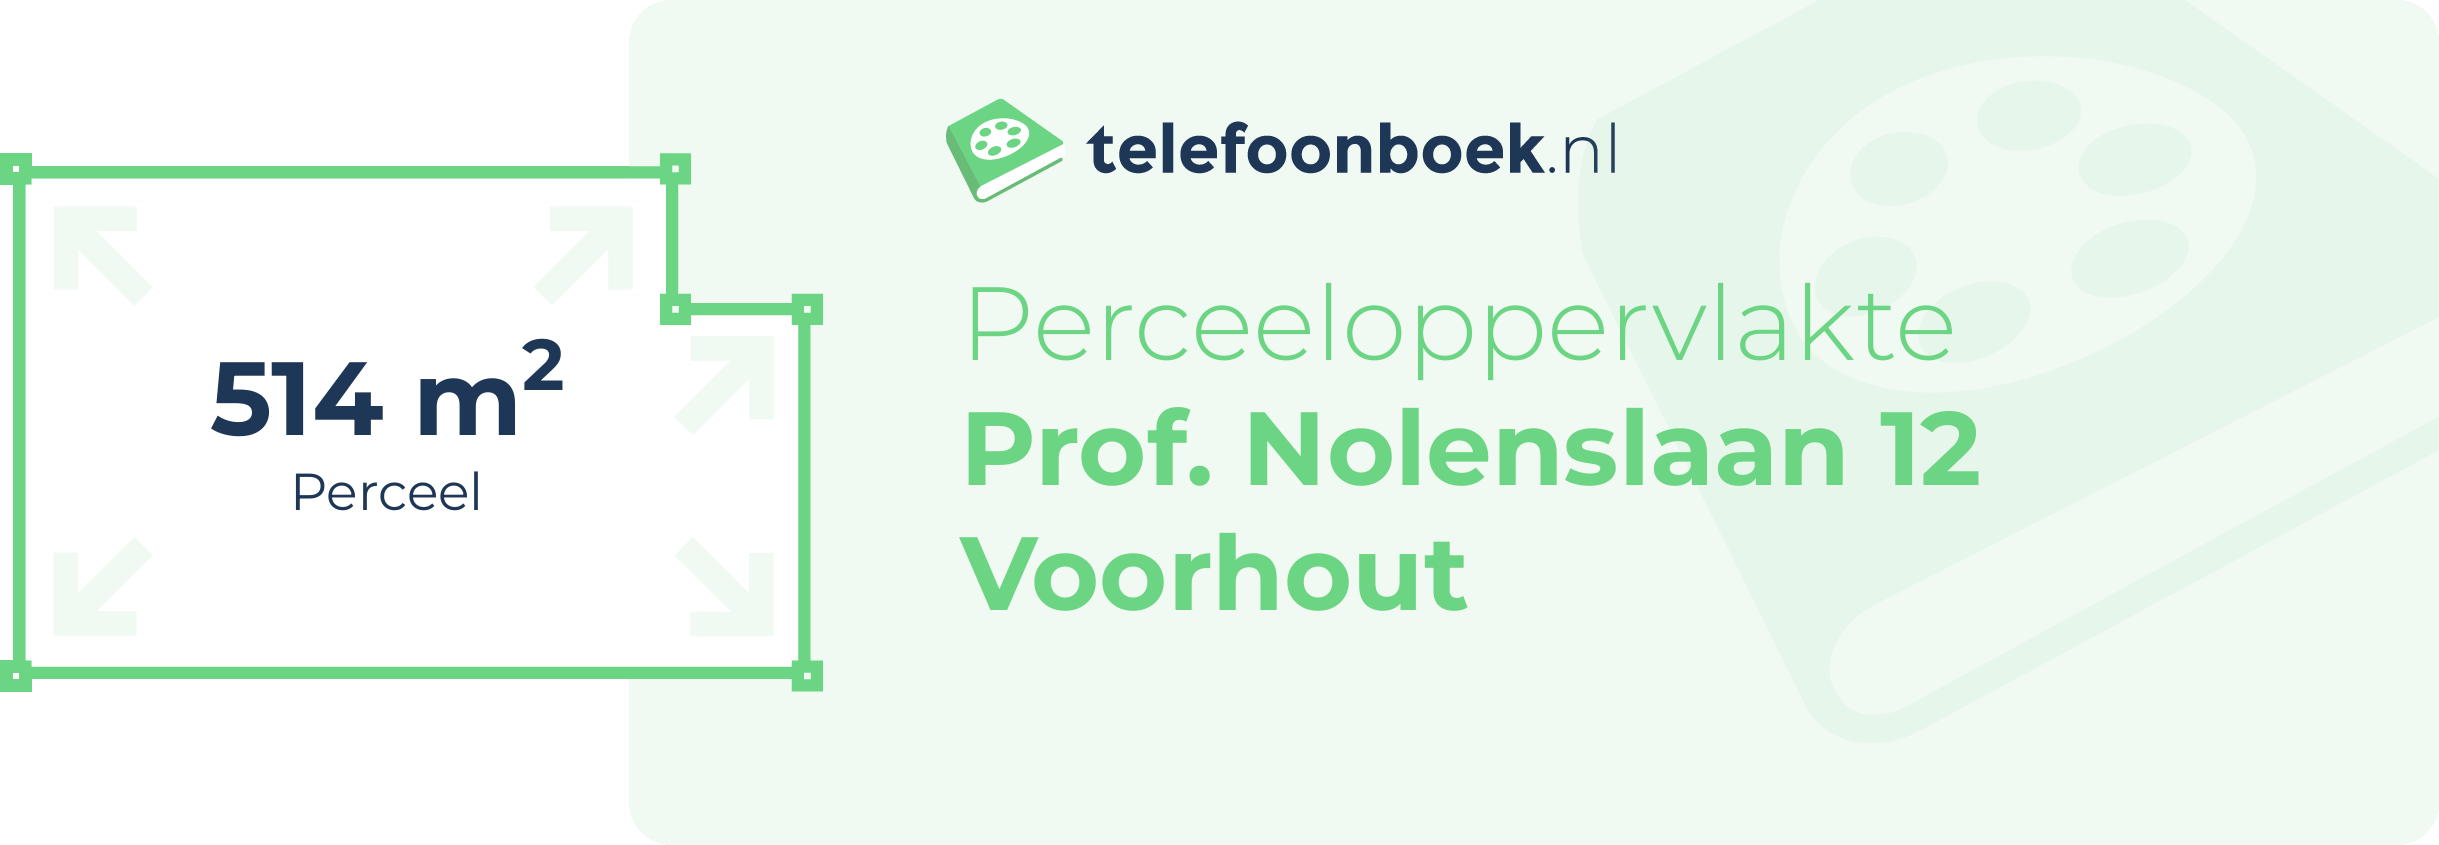 Perceeloppervlakte Prof. Nolenslaan 12 Voorhout